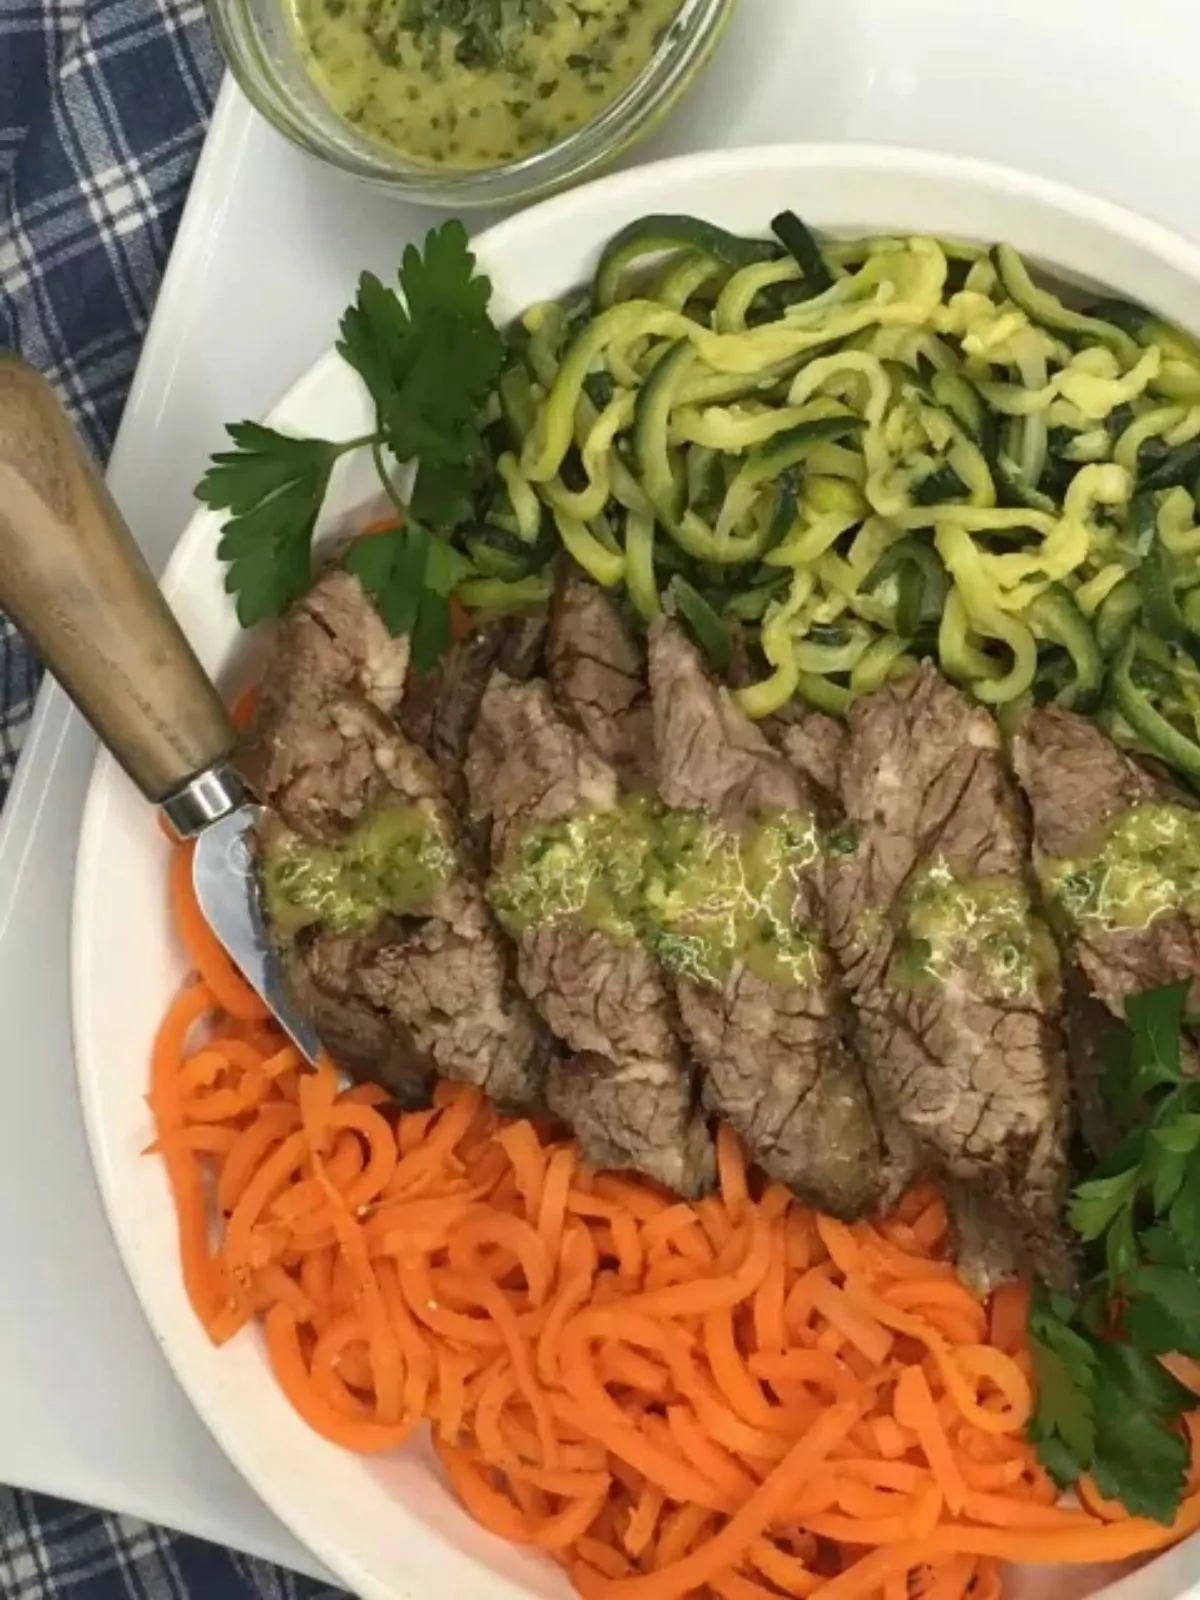 green giant veggie spirals with steak on plate.